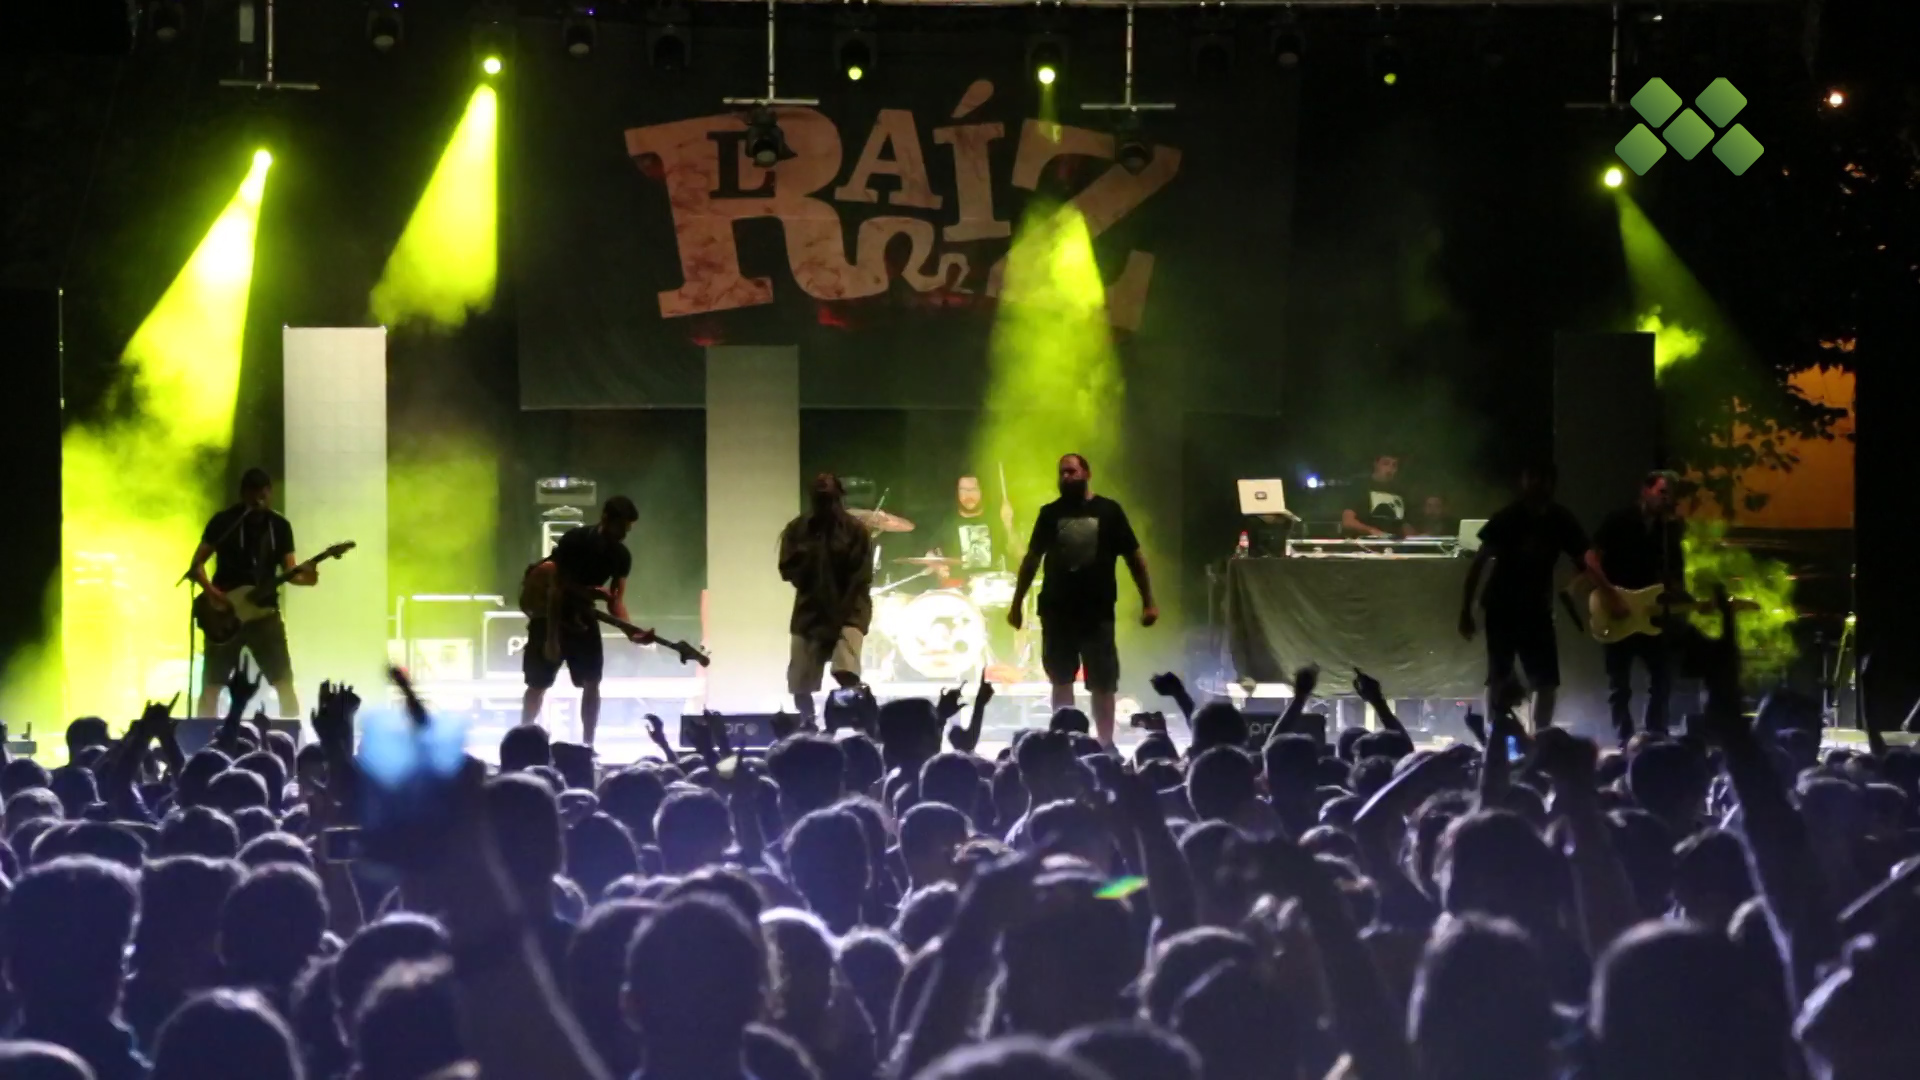 Gairebé 2.500 persones al concert de La Raíz a Torregrossa